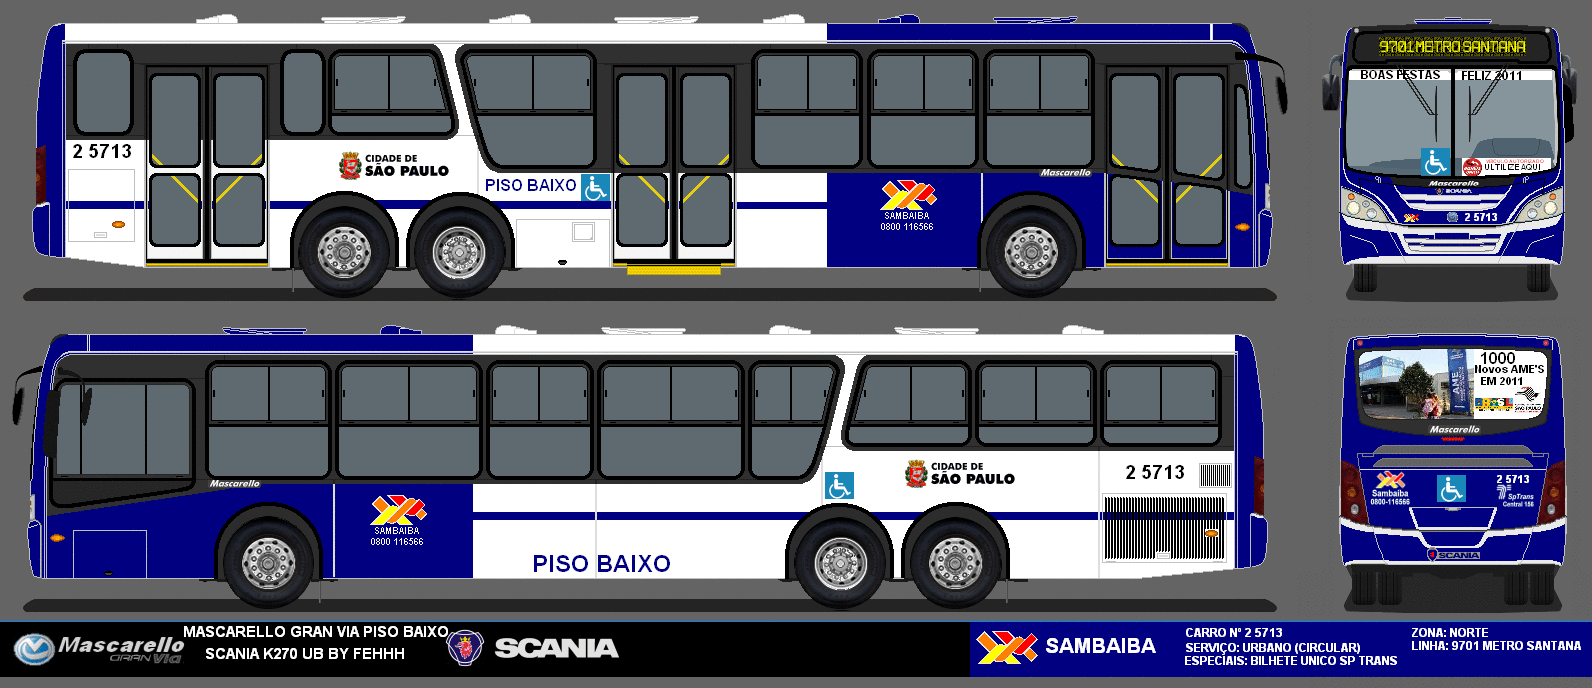 Scania K270